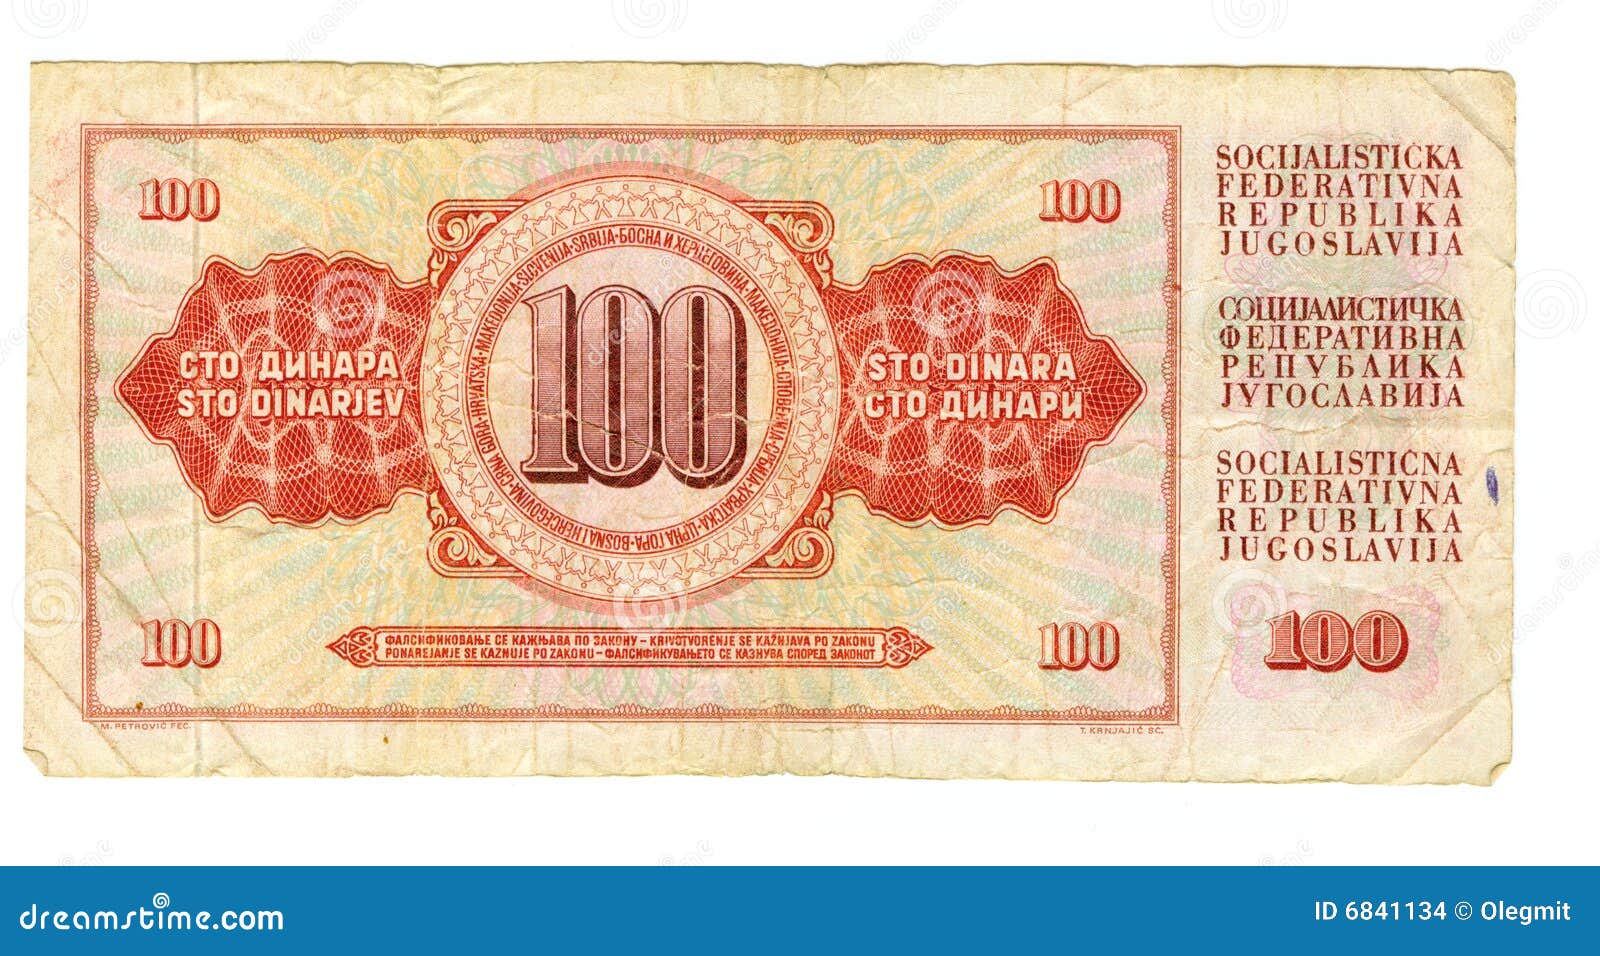 100 dinar bill of yugoslavia, 1978